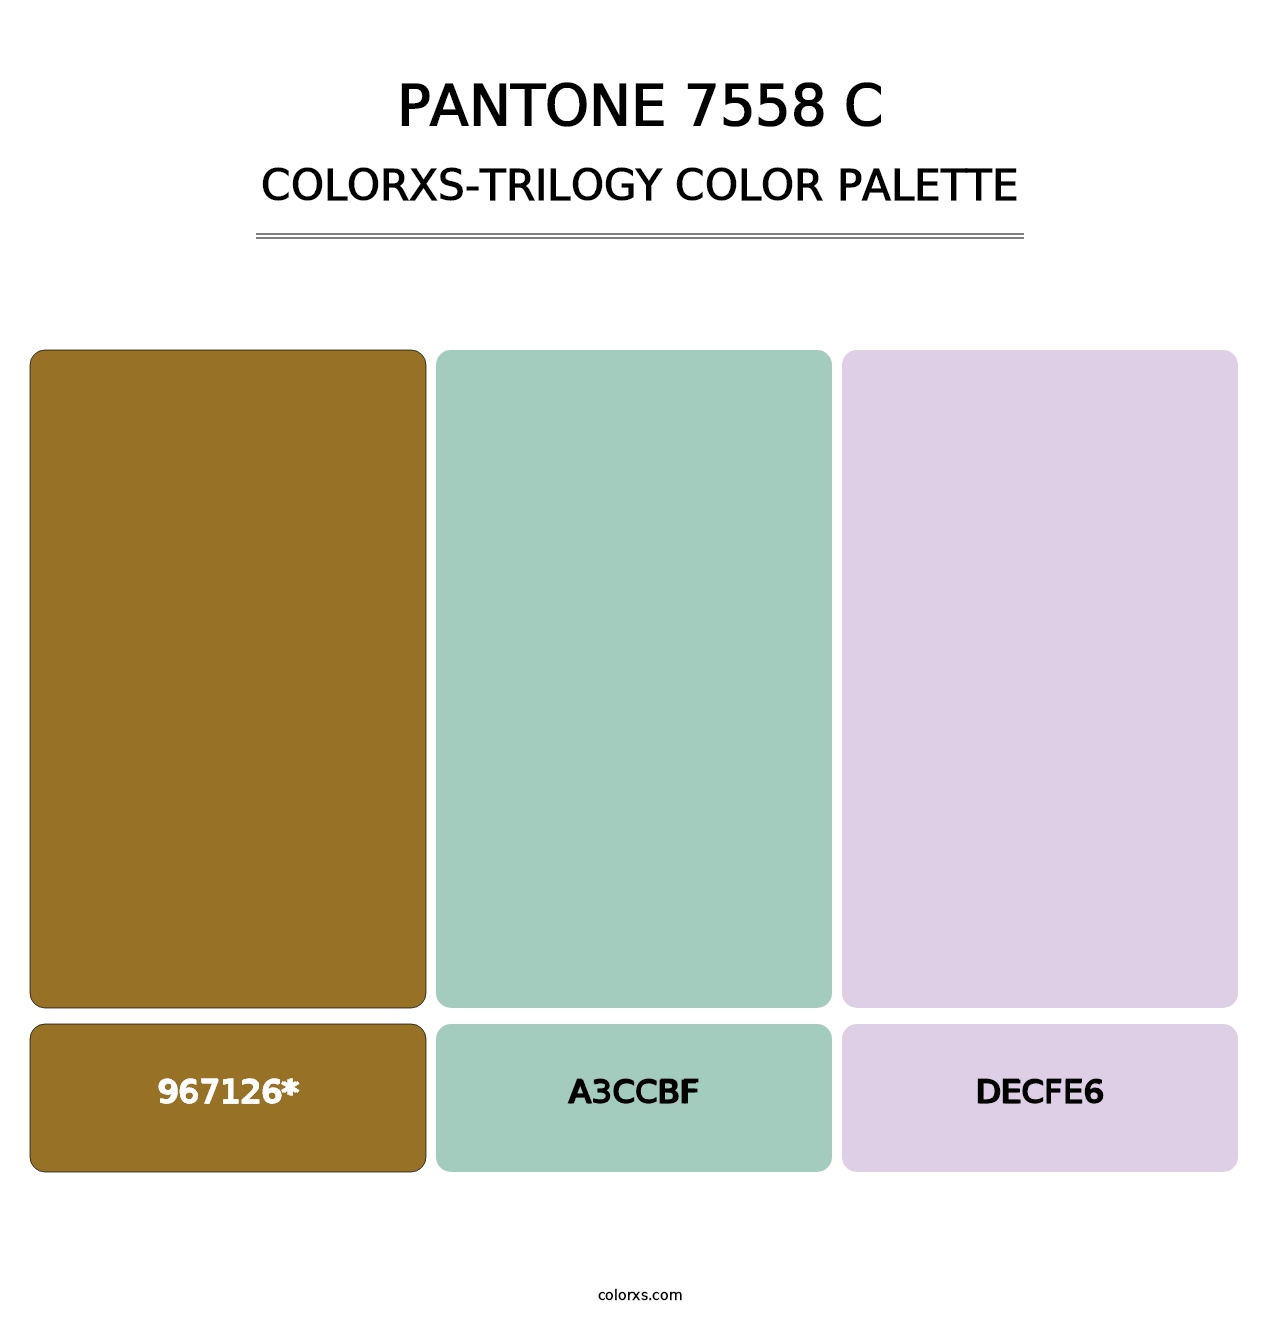 PANTONE 7558 C - Colorxs Trilogy Palette